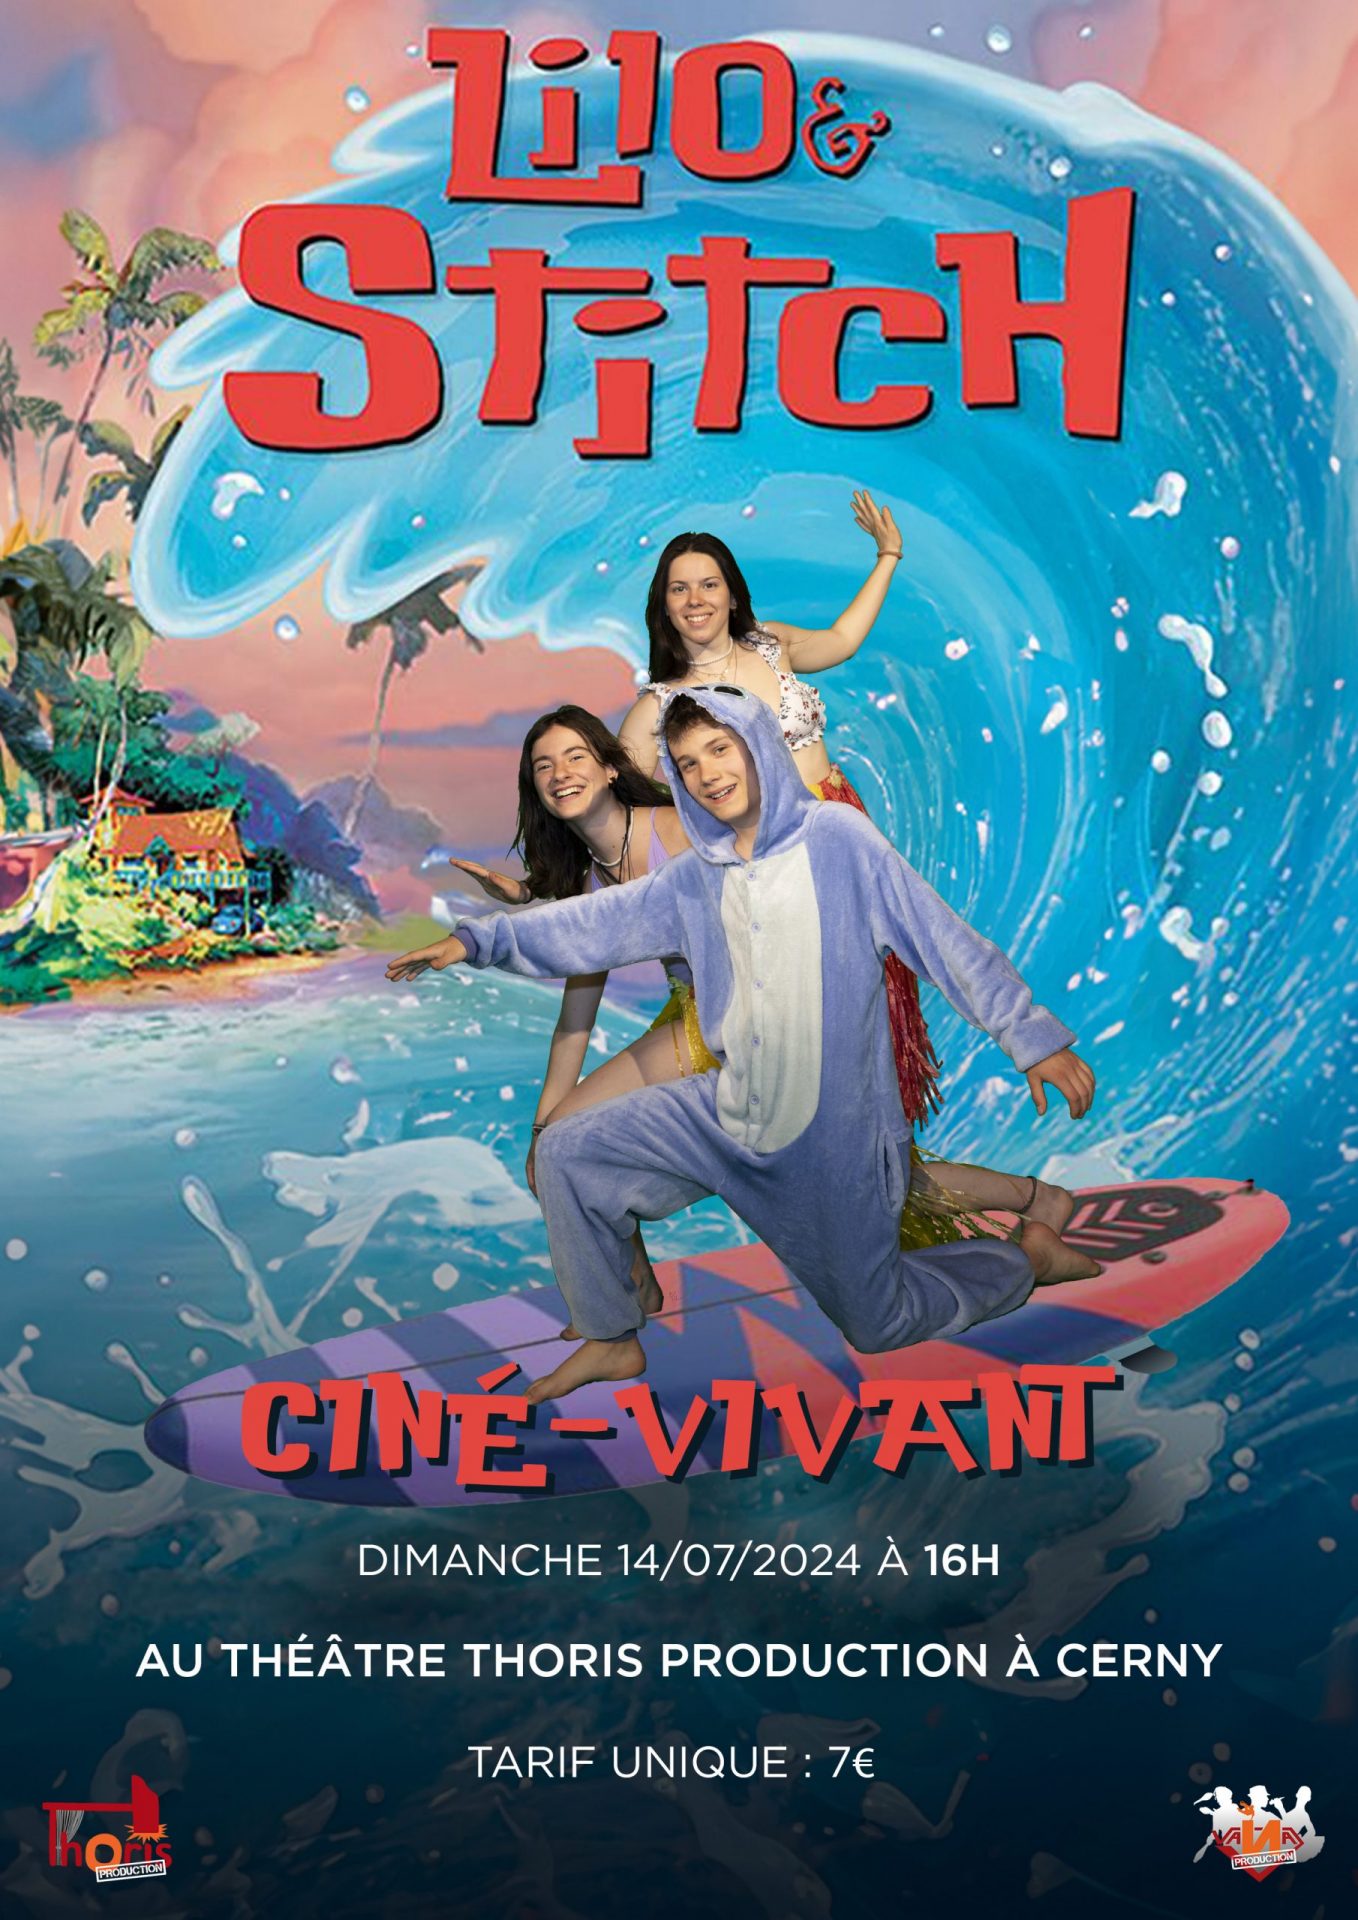 CINÉ-VIVANT : Lilo & Stitch (Dimanche)